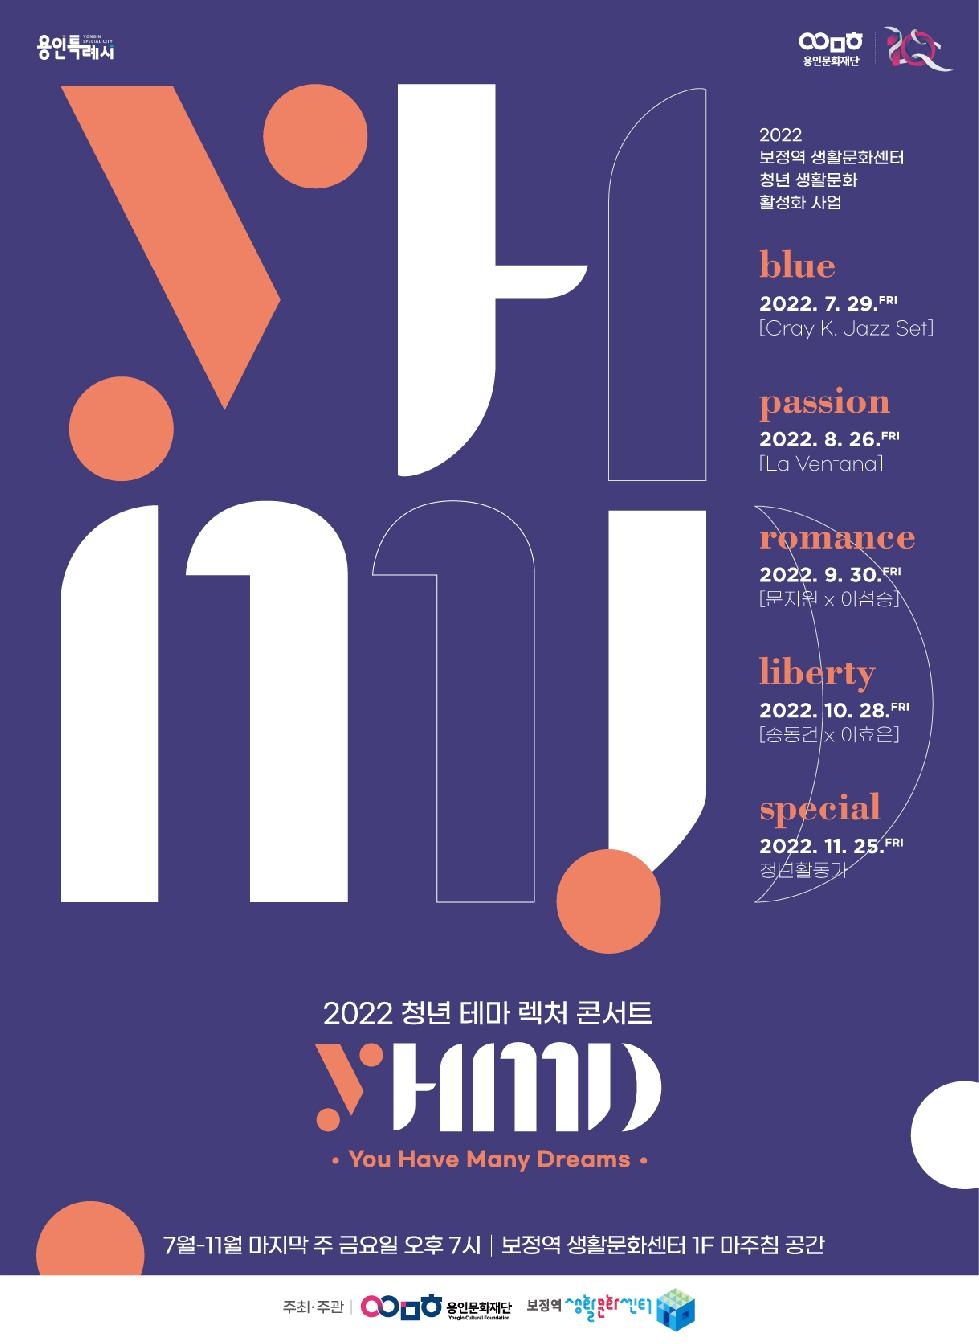 용인문화재단, 2022 청년 테마 렉처 콘서트 [YHMD] 10월 프로그램 개최